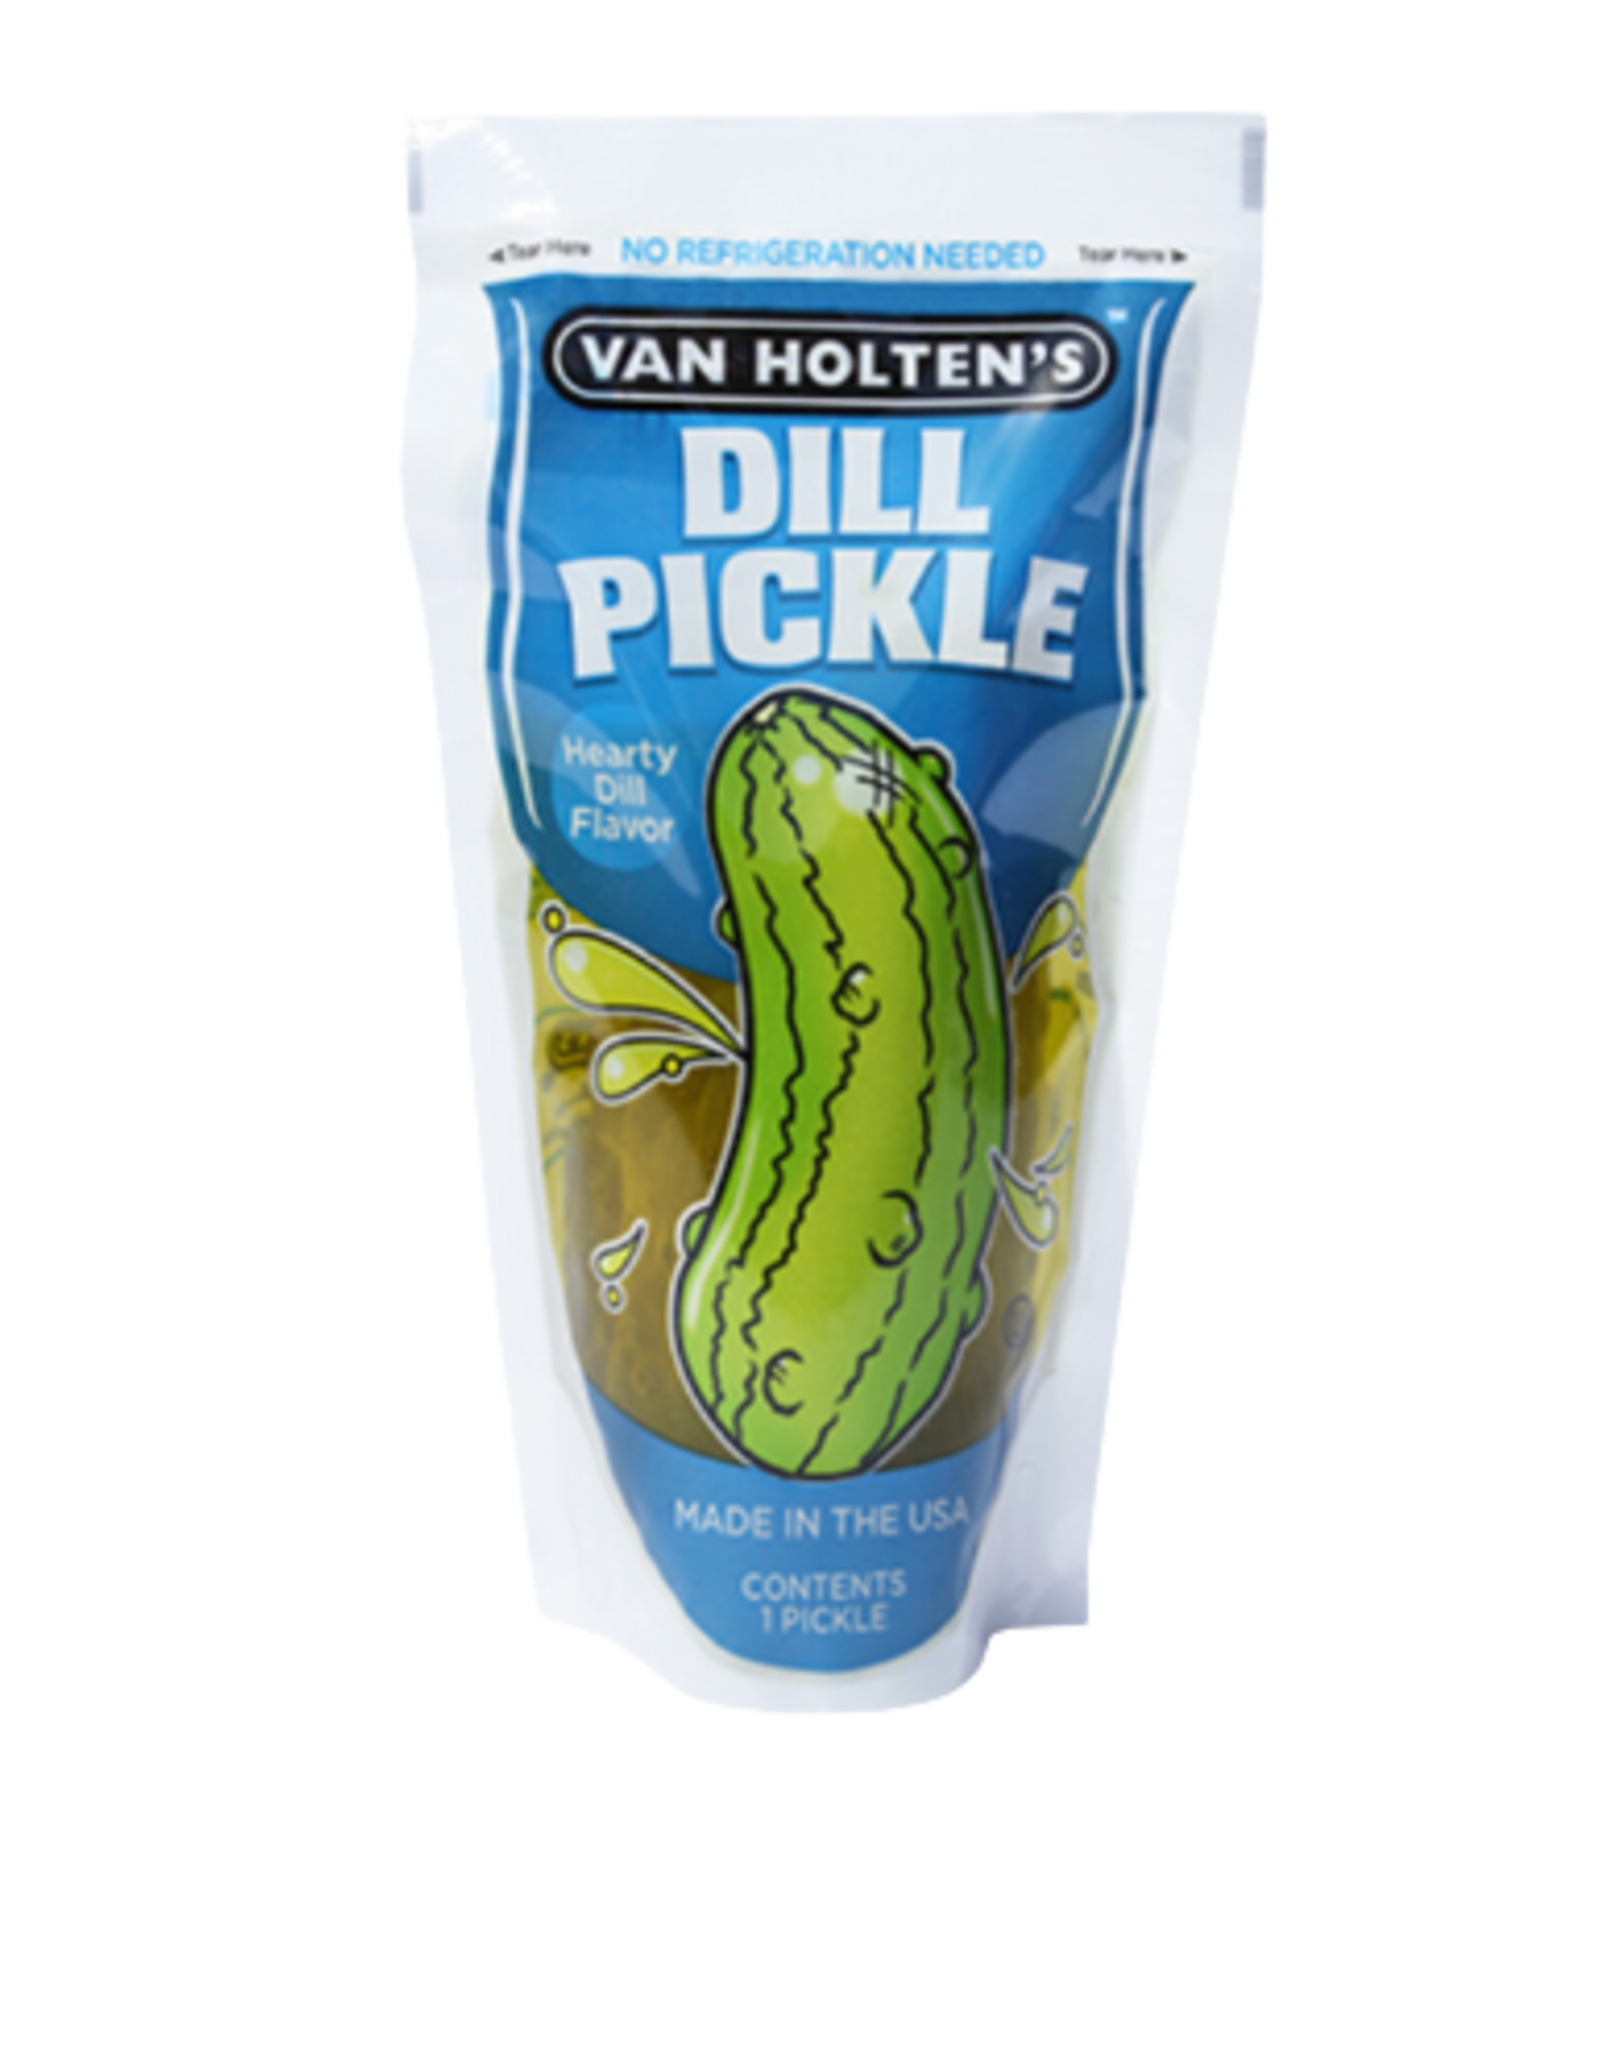 Van Holten’s Dill Pickle Jumbo